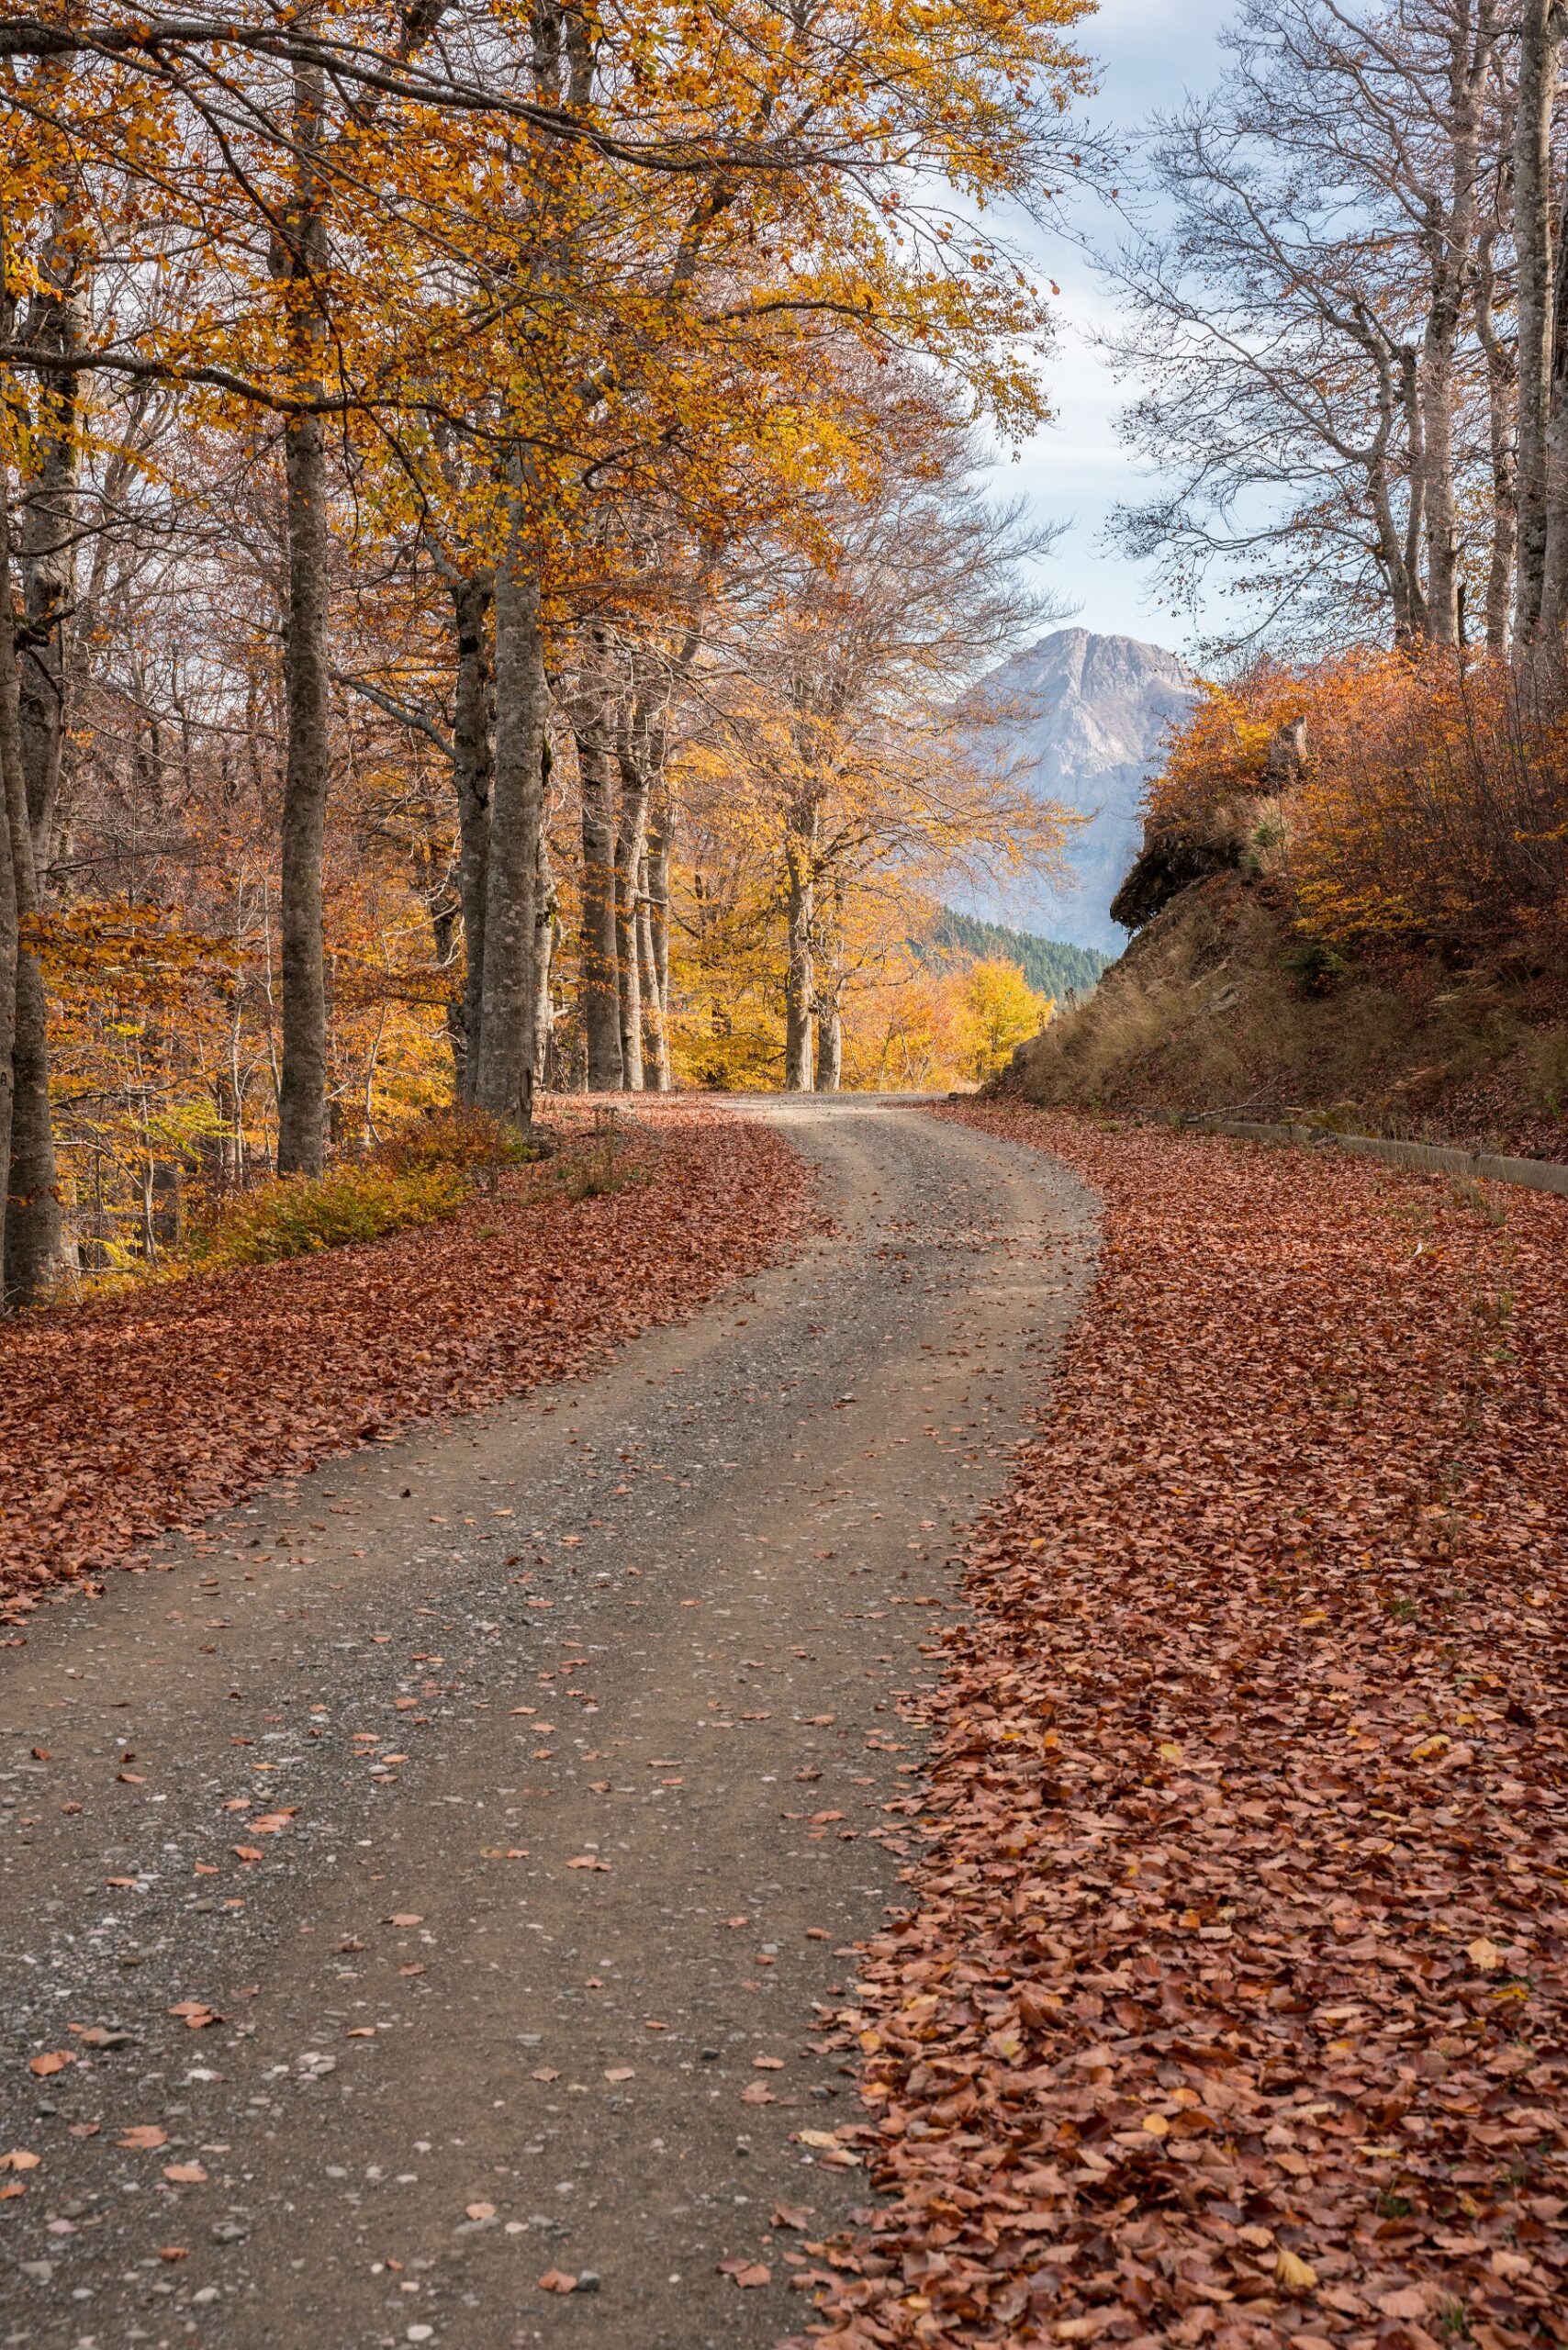 Γραμμένη Οξυά: Το χωριό με τις πέτρινες βρύσες, που μοιάζει να αναδύεται από το δάσος της Ορεινής Ναυπακτίας